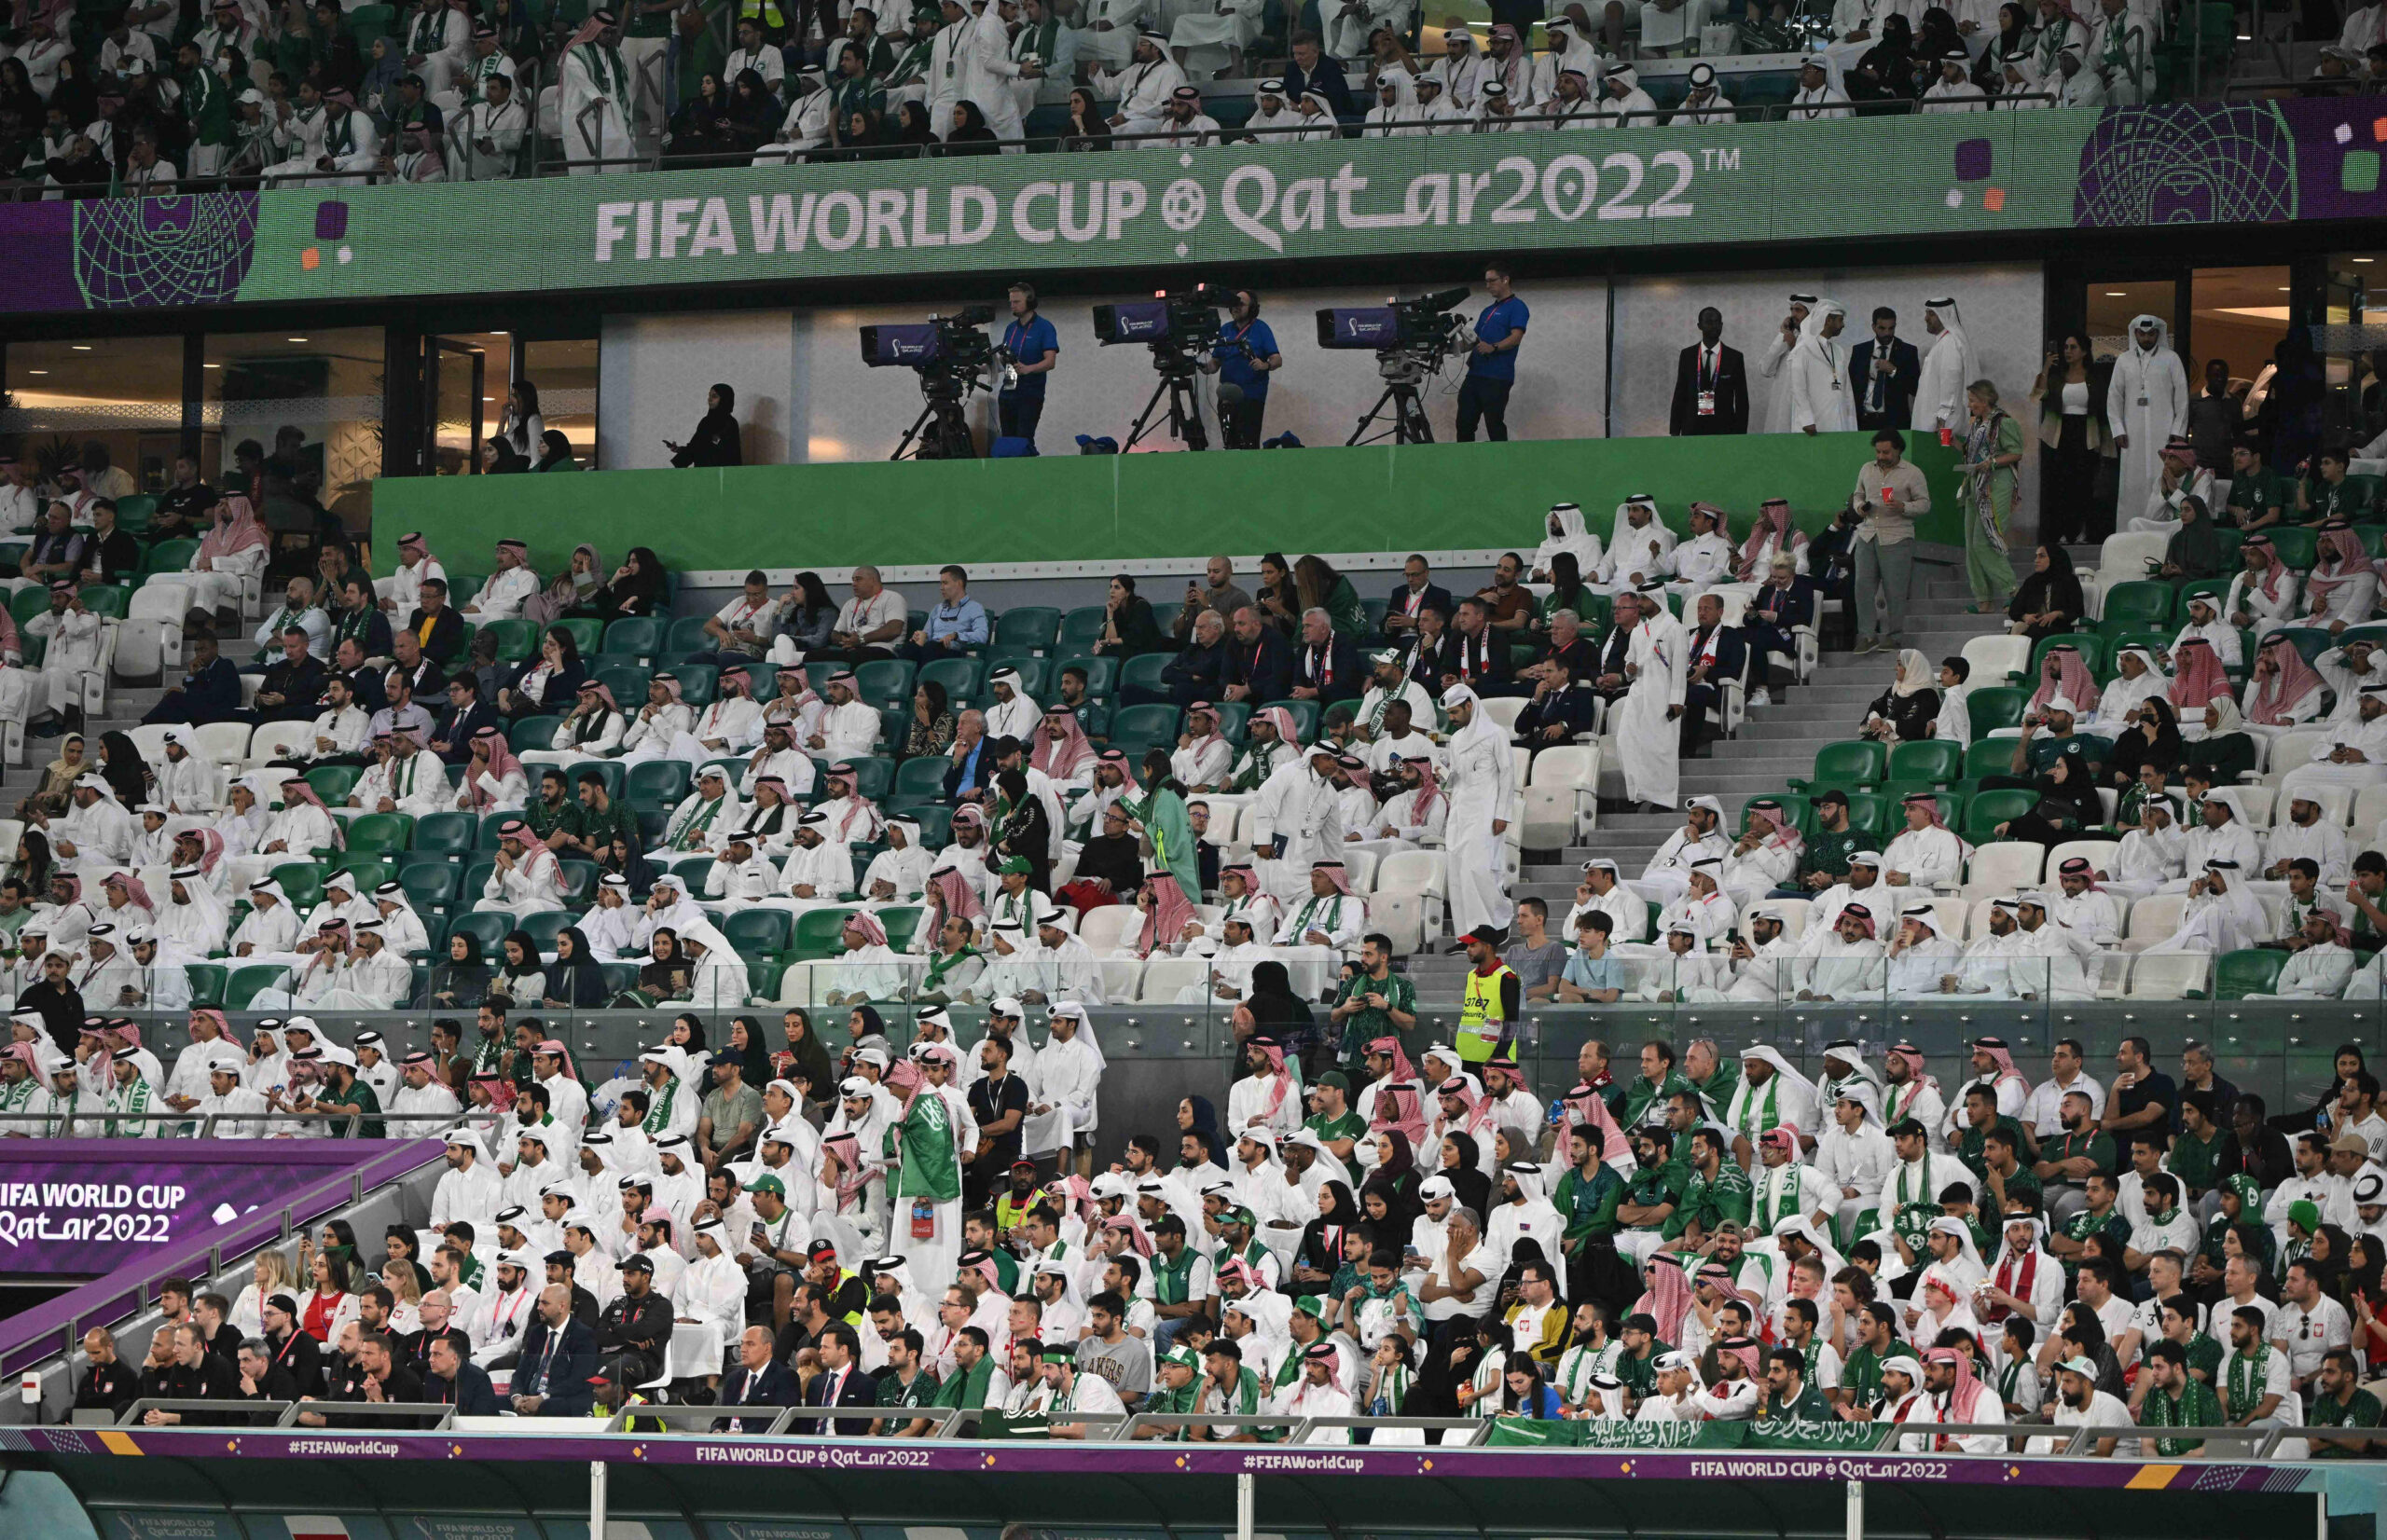 Saudi-Arabien-Fans auf der Tribüne bei der WM